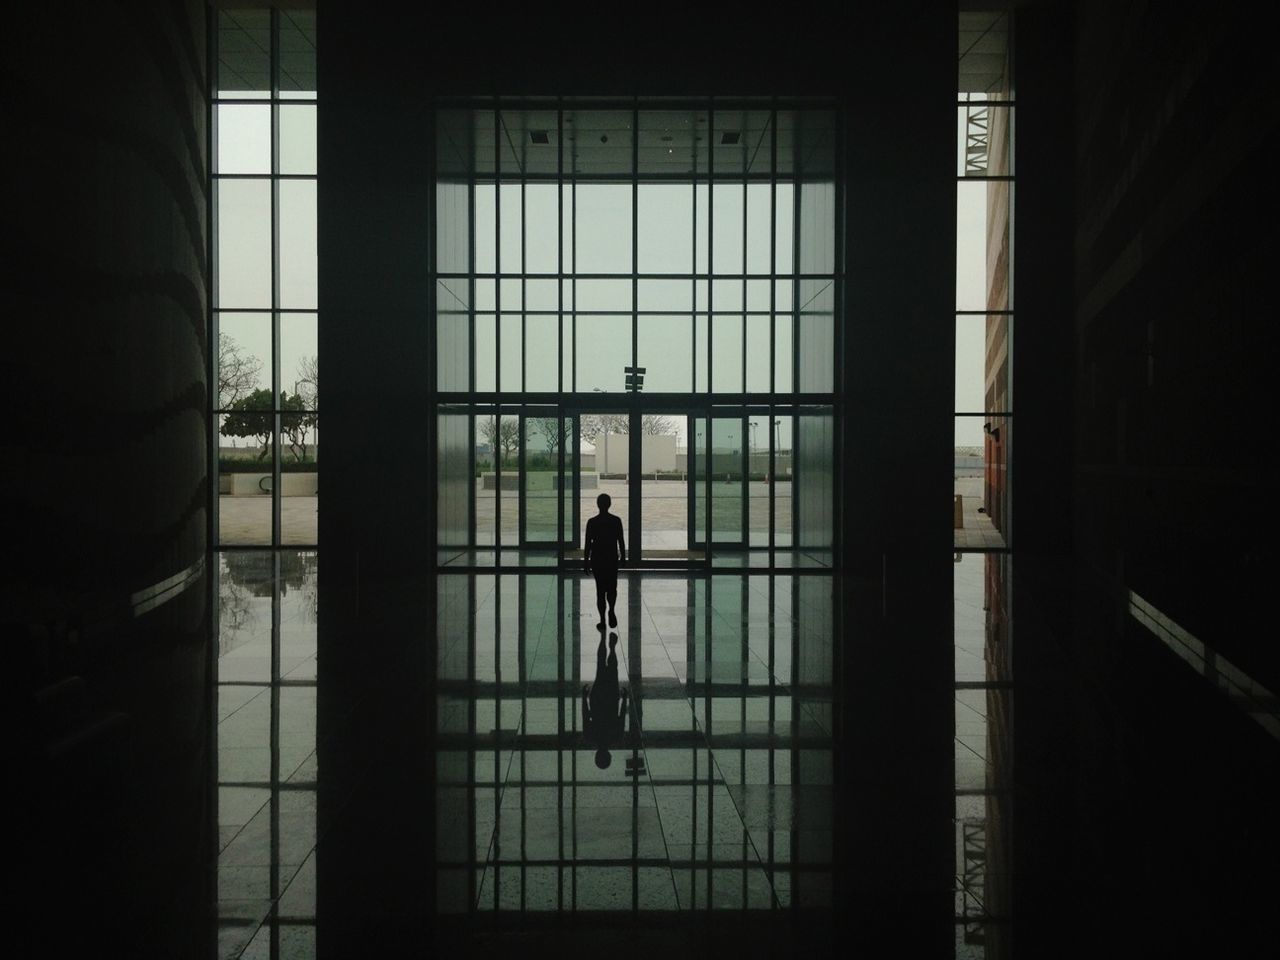 Silhouette of man walking towards glass door